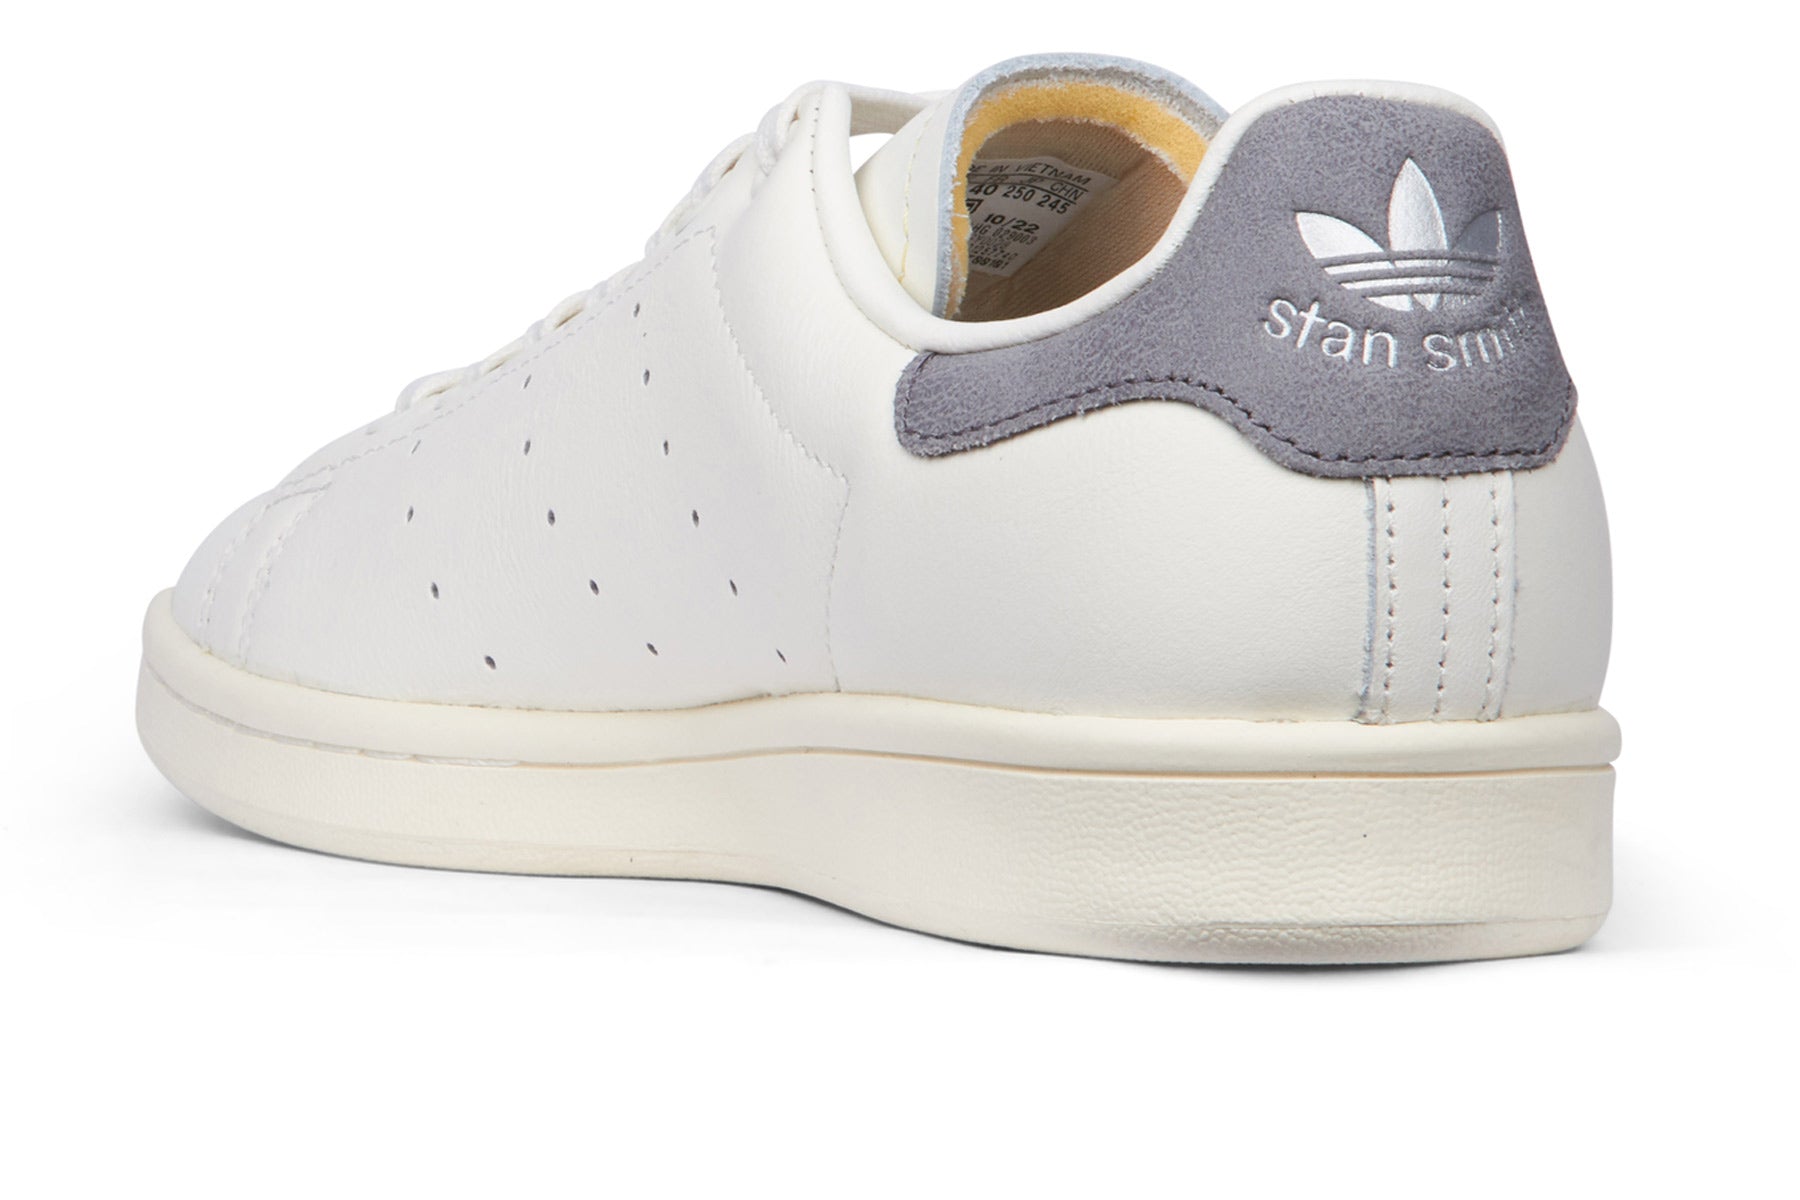 Adidas Stan Smith - Chalk White/Off White/Panton